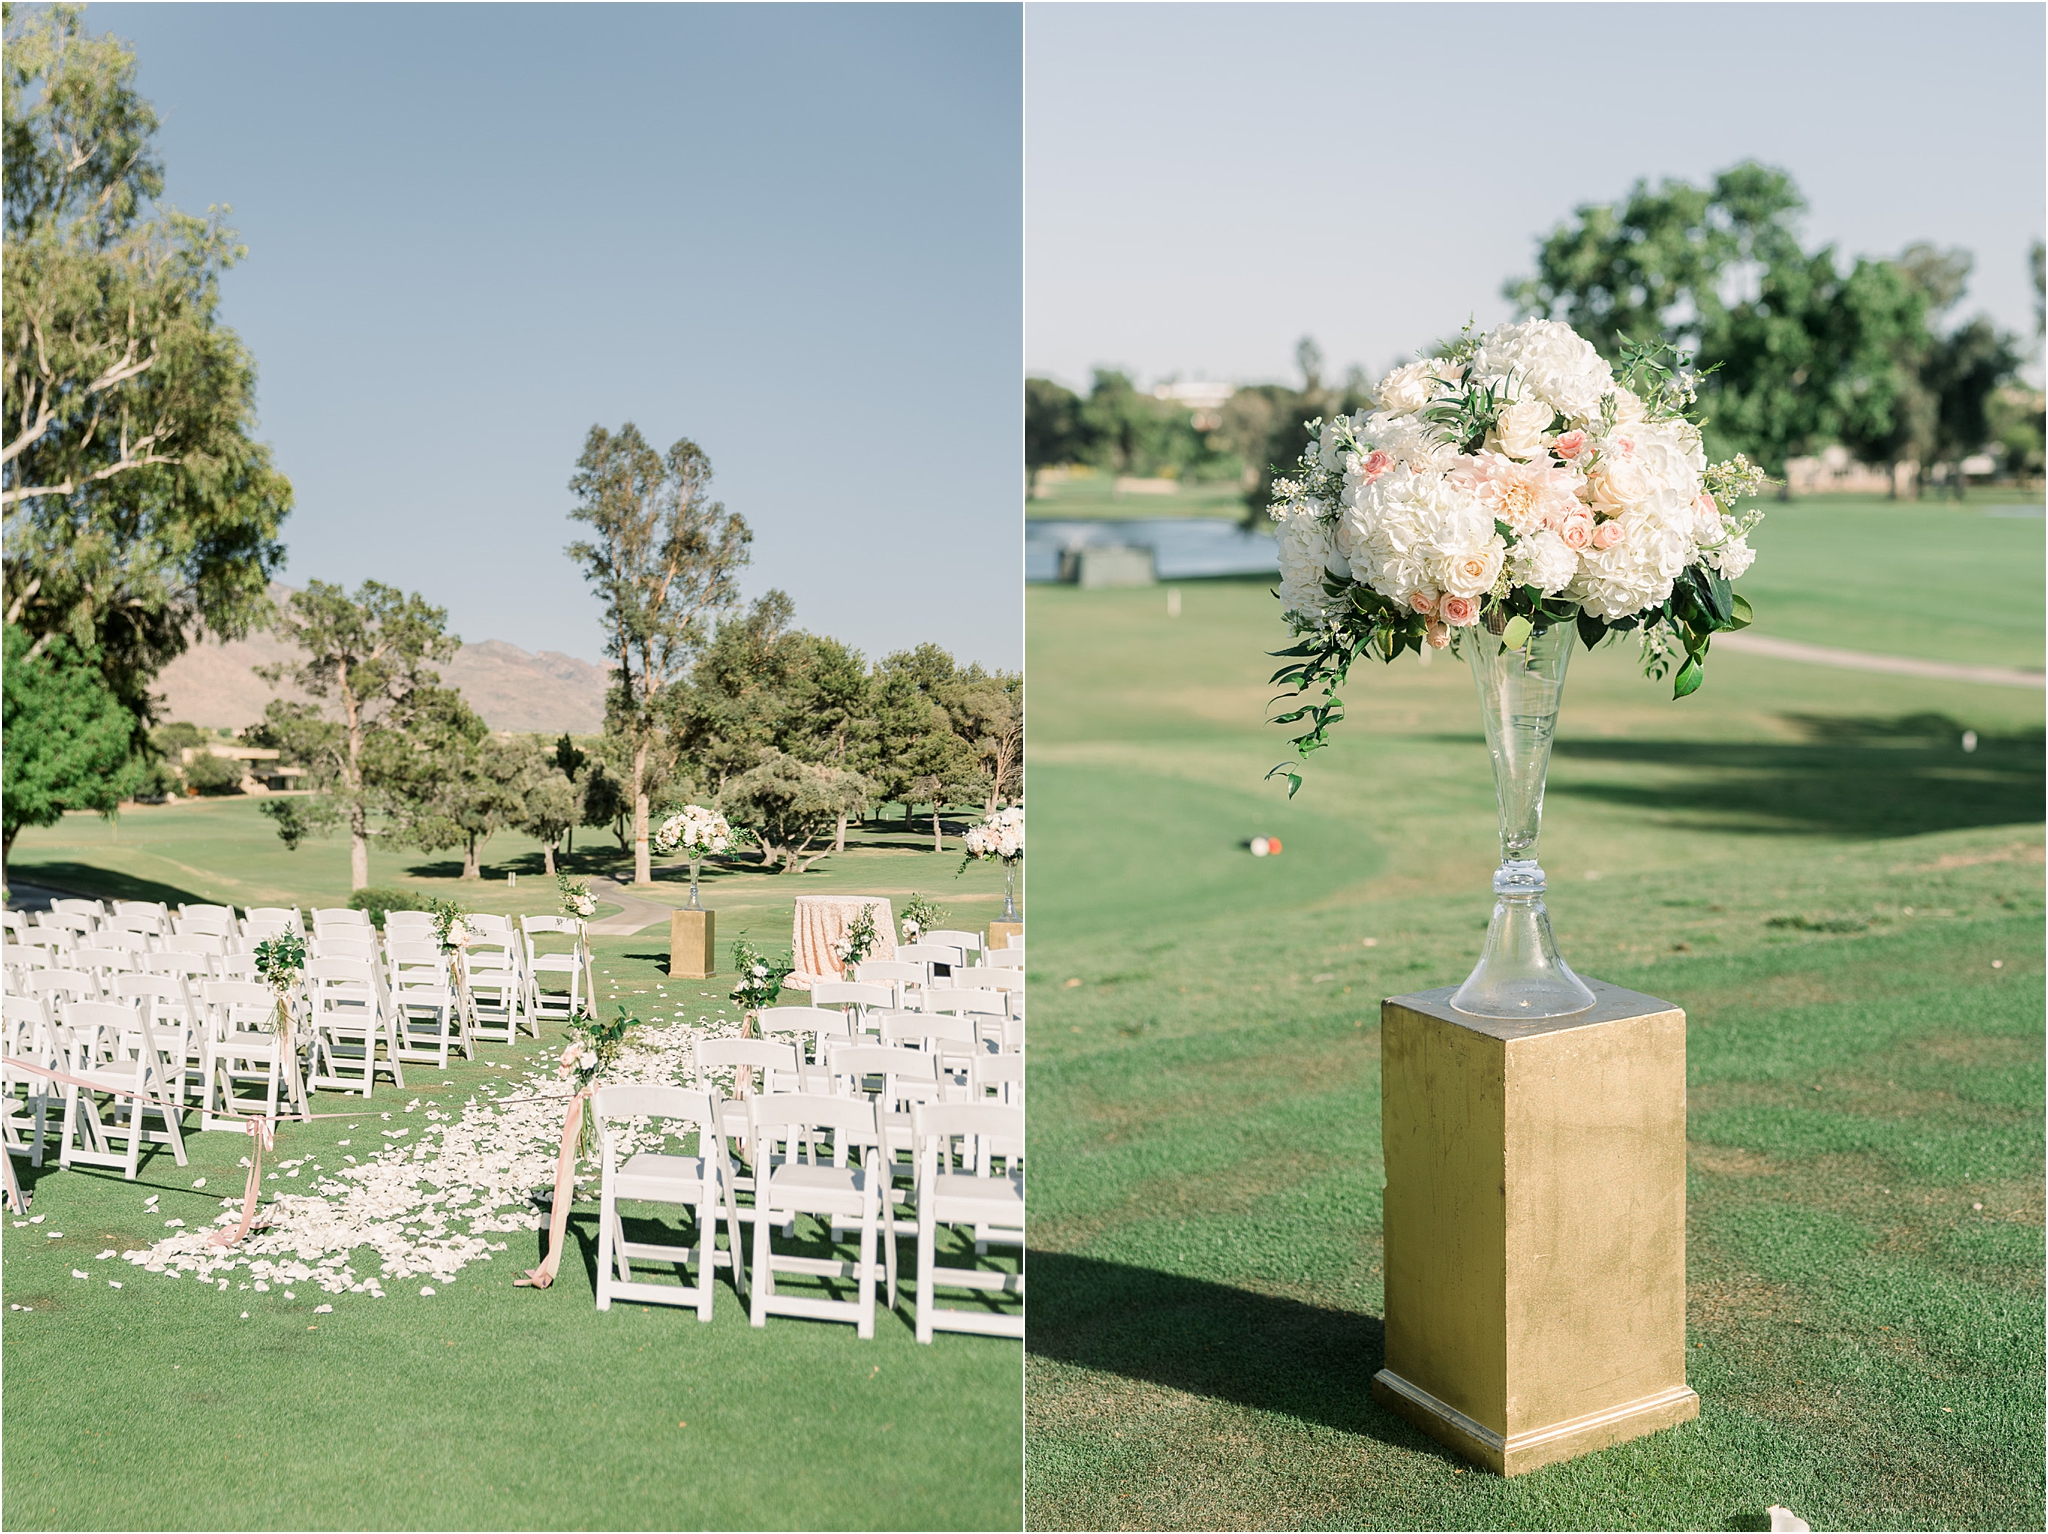 Omni Wedding Photographer | Tucson AZ | Ligia and Arturo ceremony photos | Tucson Wedding Photographer | West End Photography